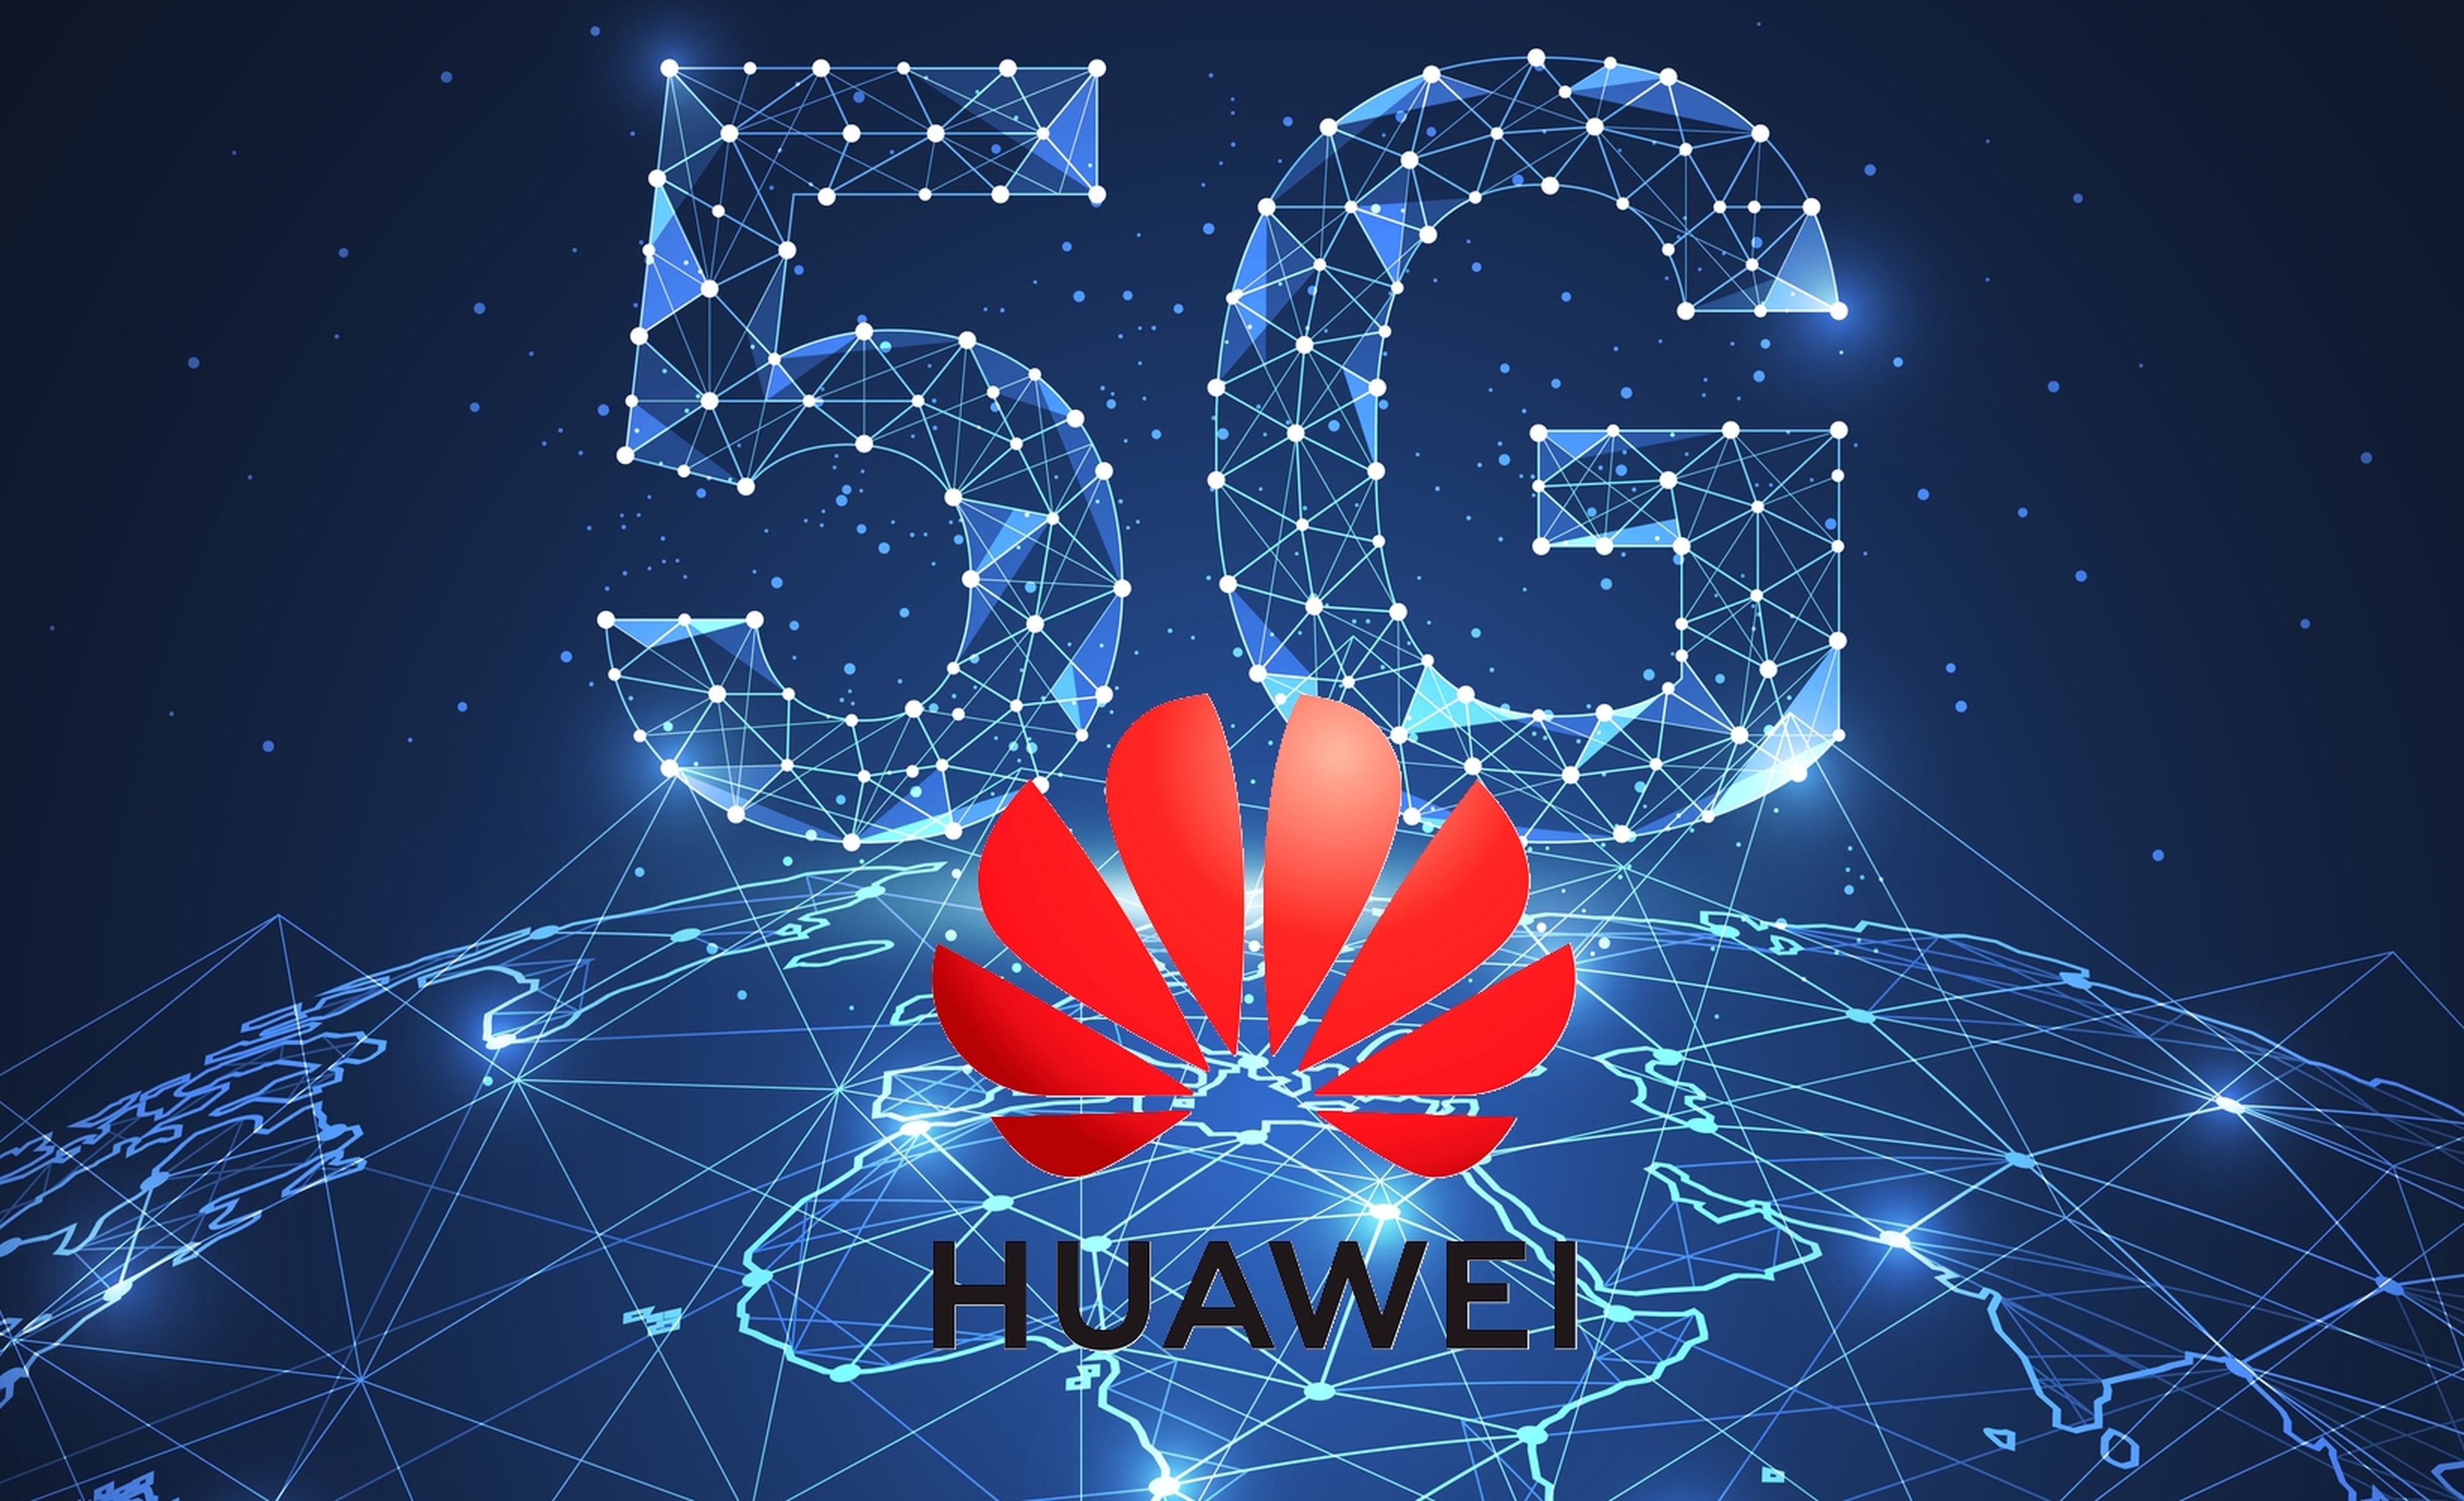 Huawei contraataca: va a cobrar royalties a Apple y Samsung por sus patentes 5G